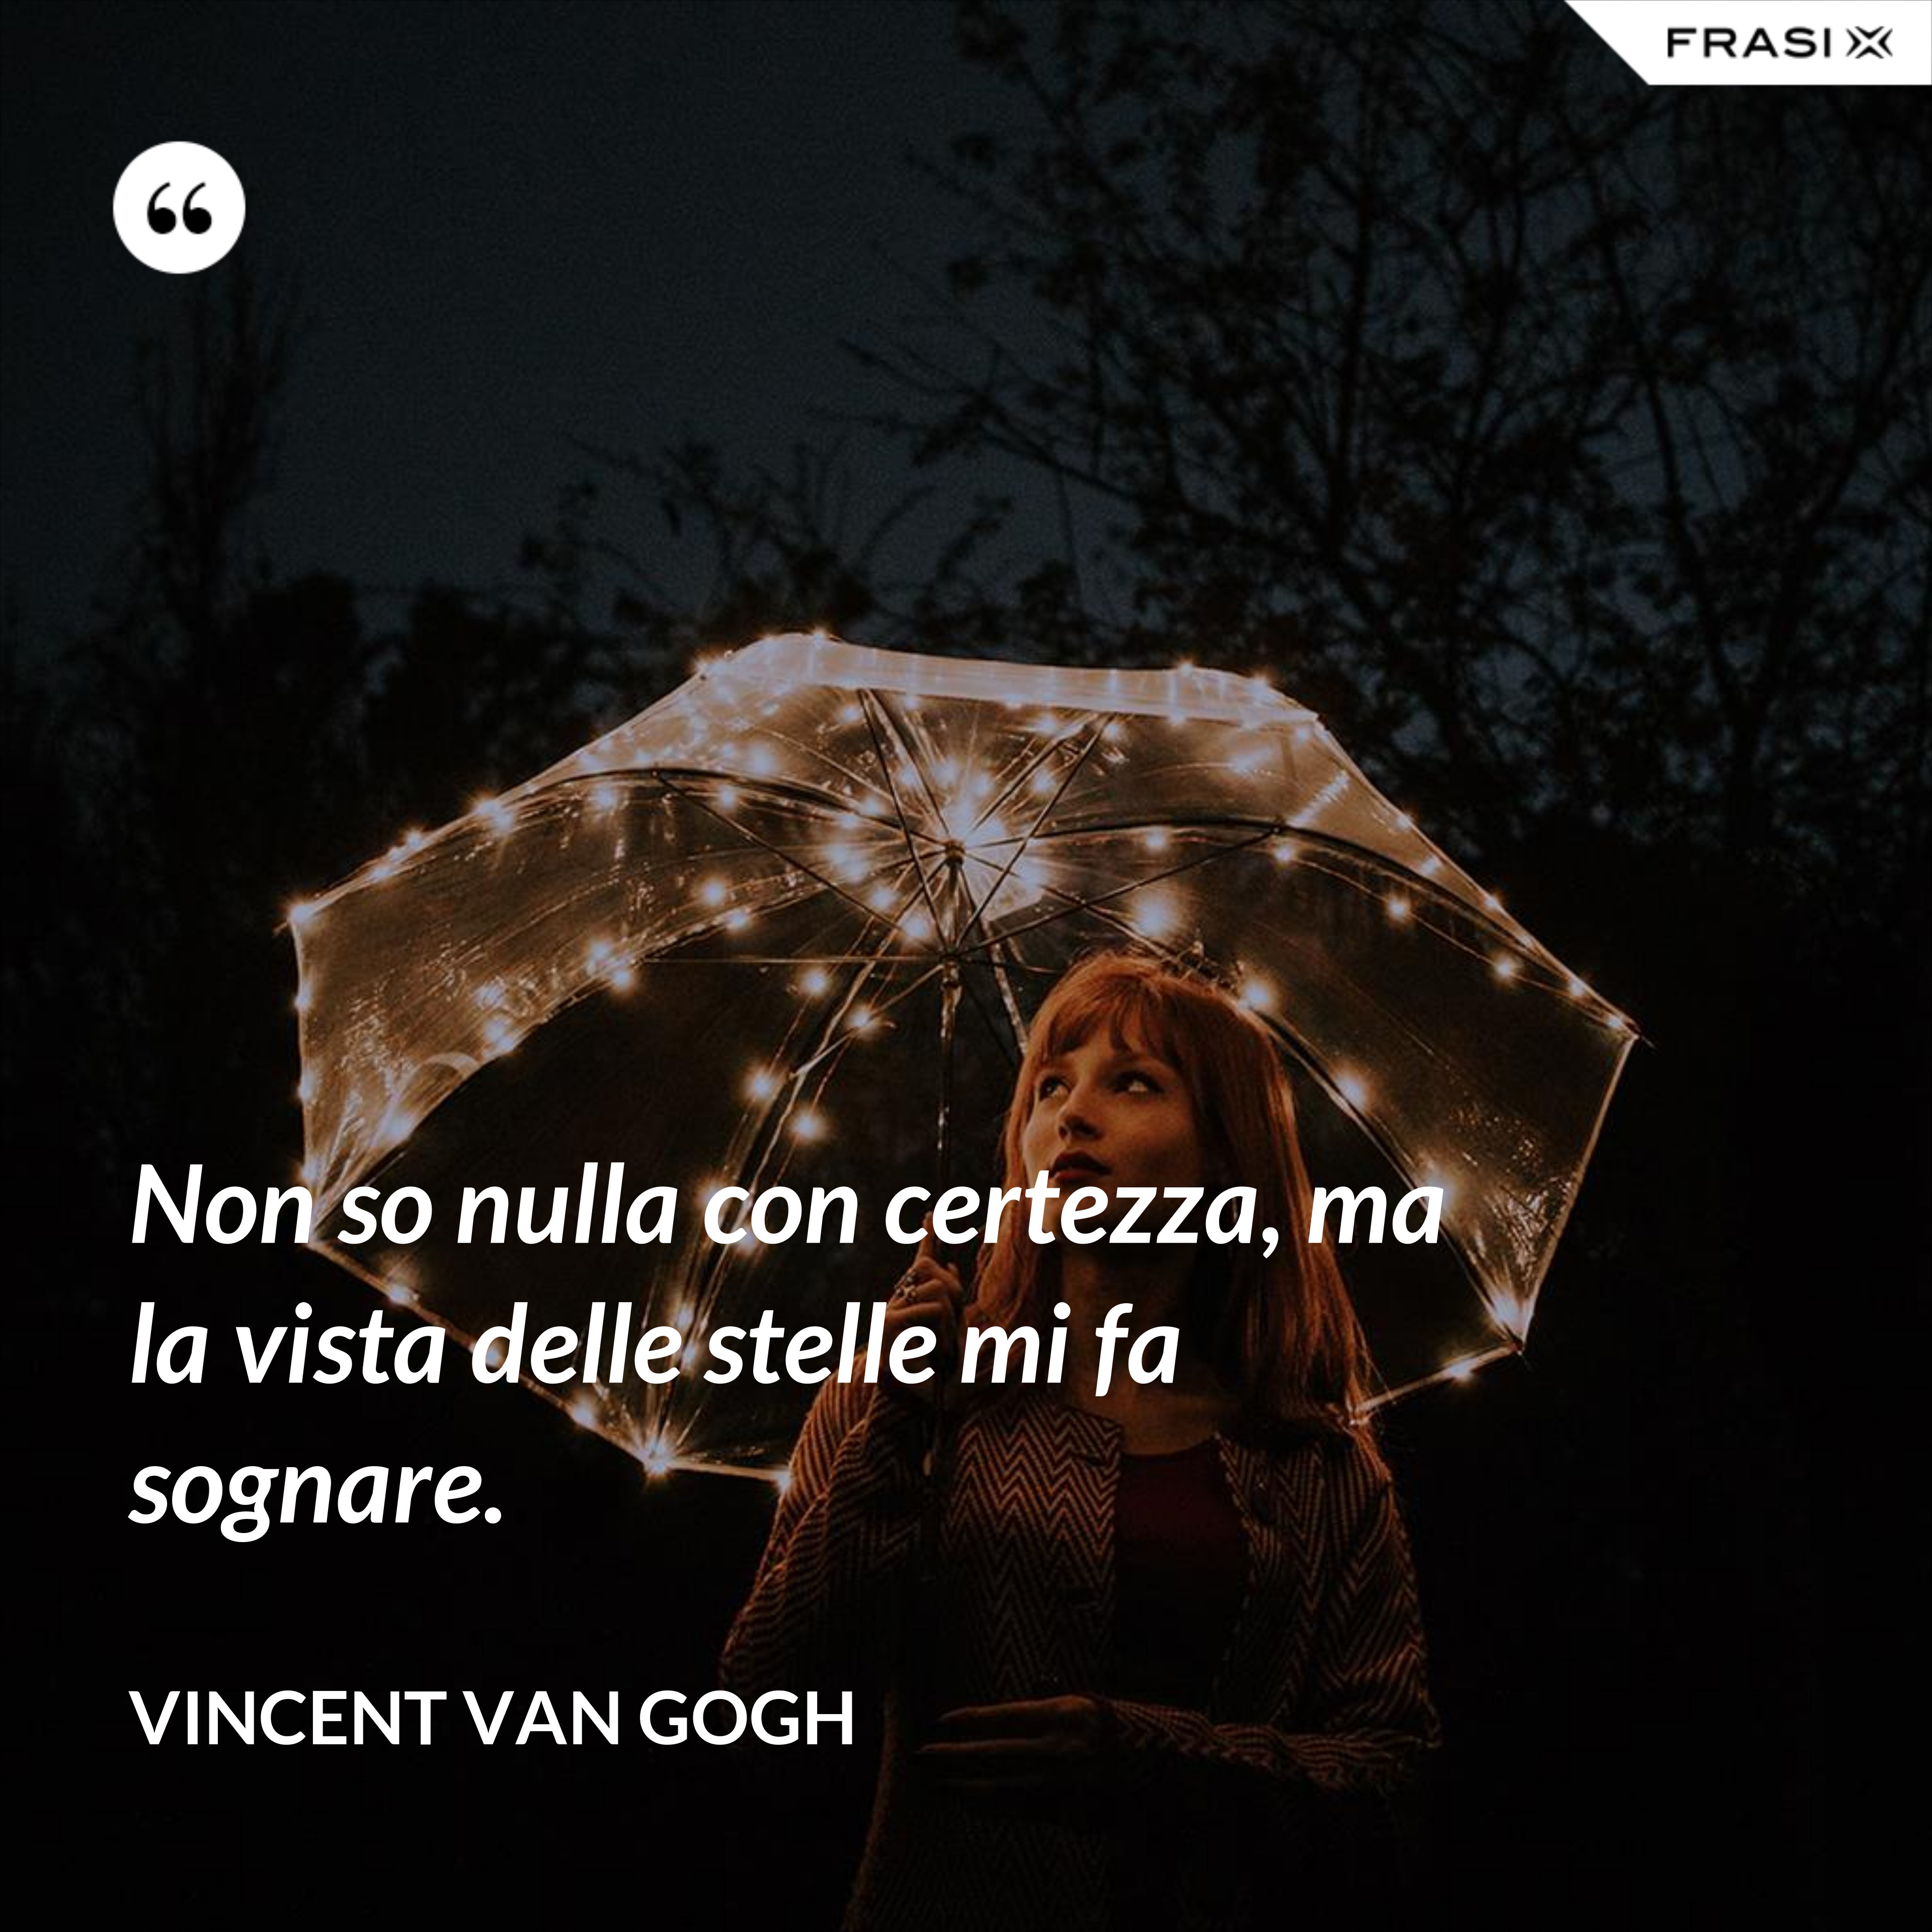 Non so nulla con certezza, ma la vista delle stelle mi fa sognare. - Vincent Van Gogh